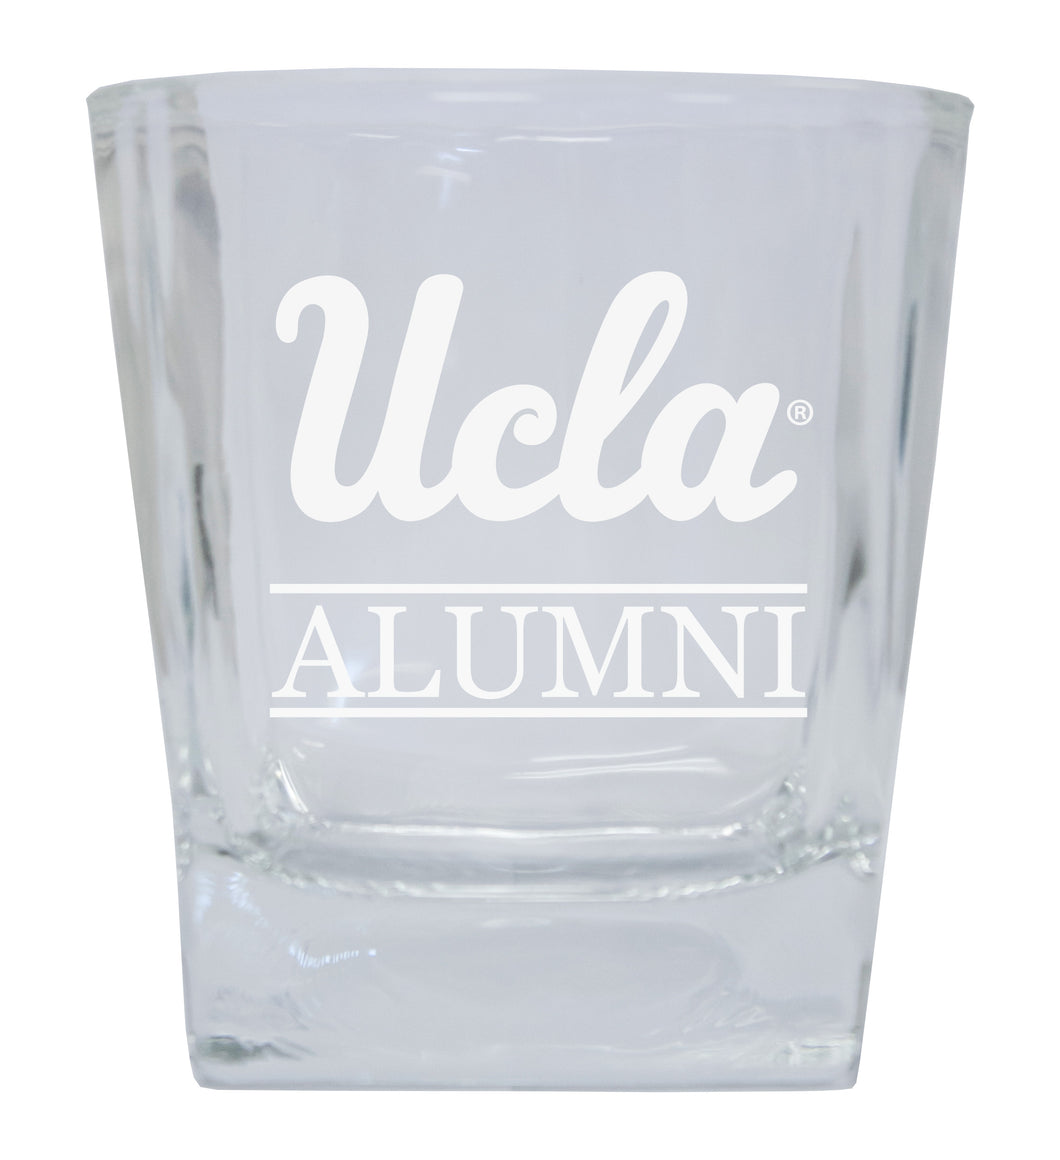 UCLA Bruins Alumni Elegance - 5 oz Etched Shooter Glass Tumbler 2-Pack